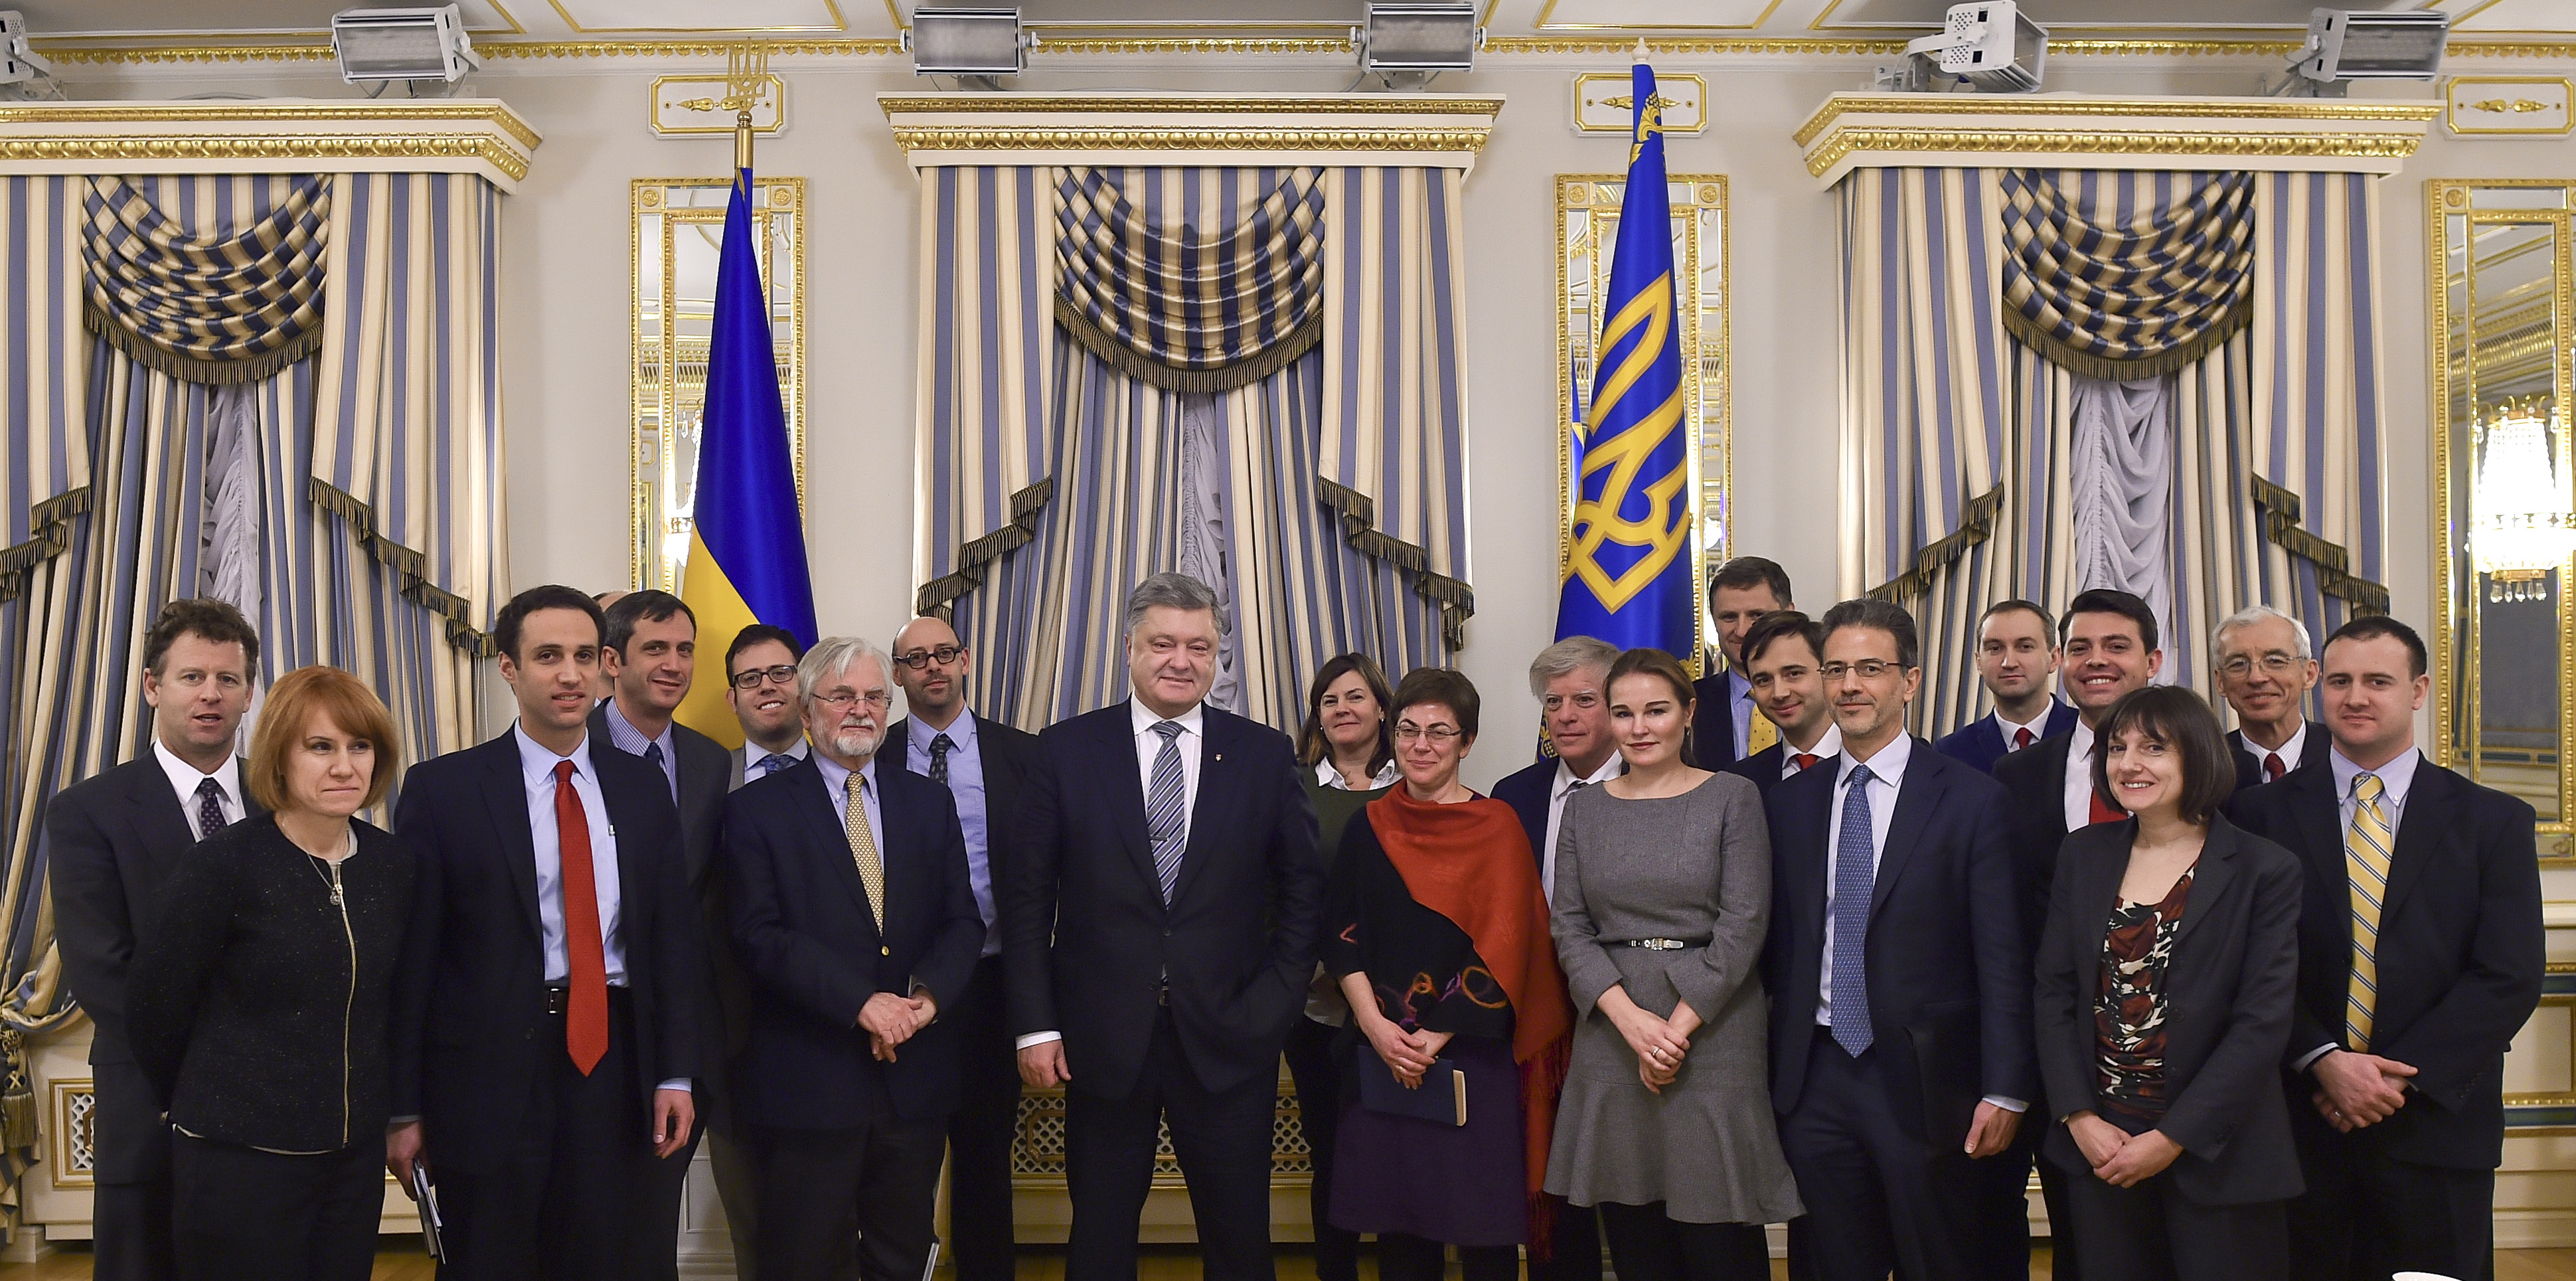 ІСП організував візит лідерів думок США до України